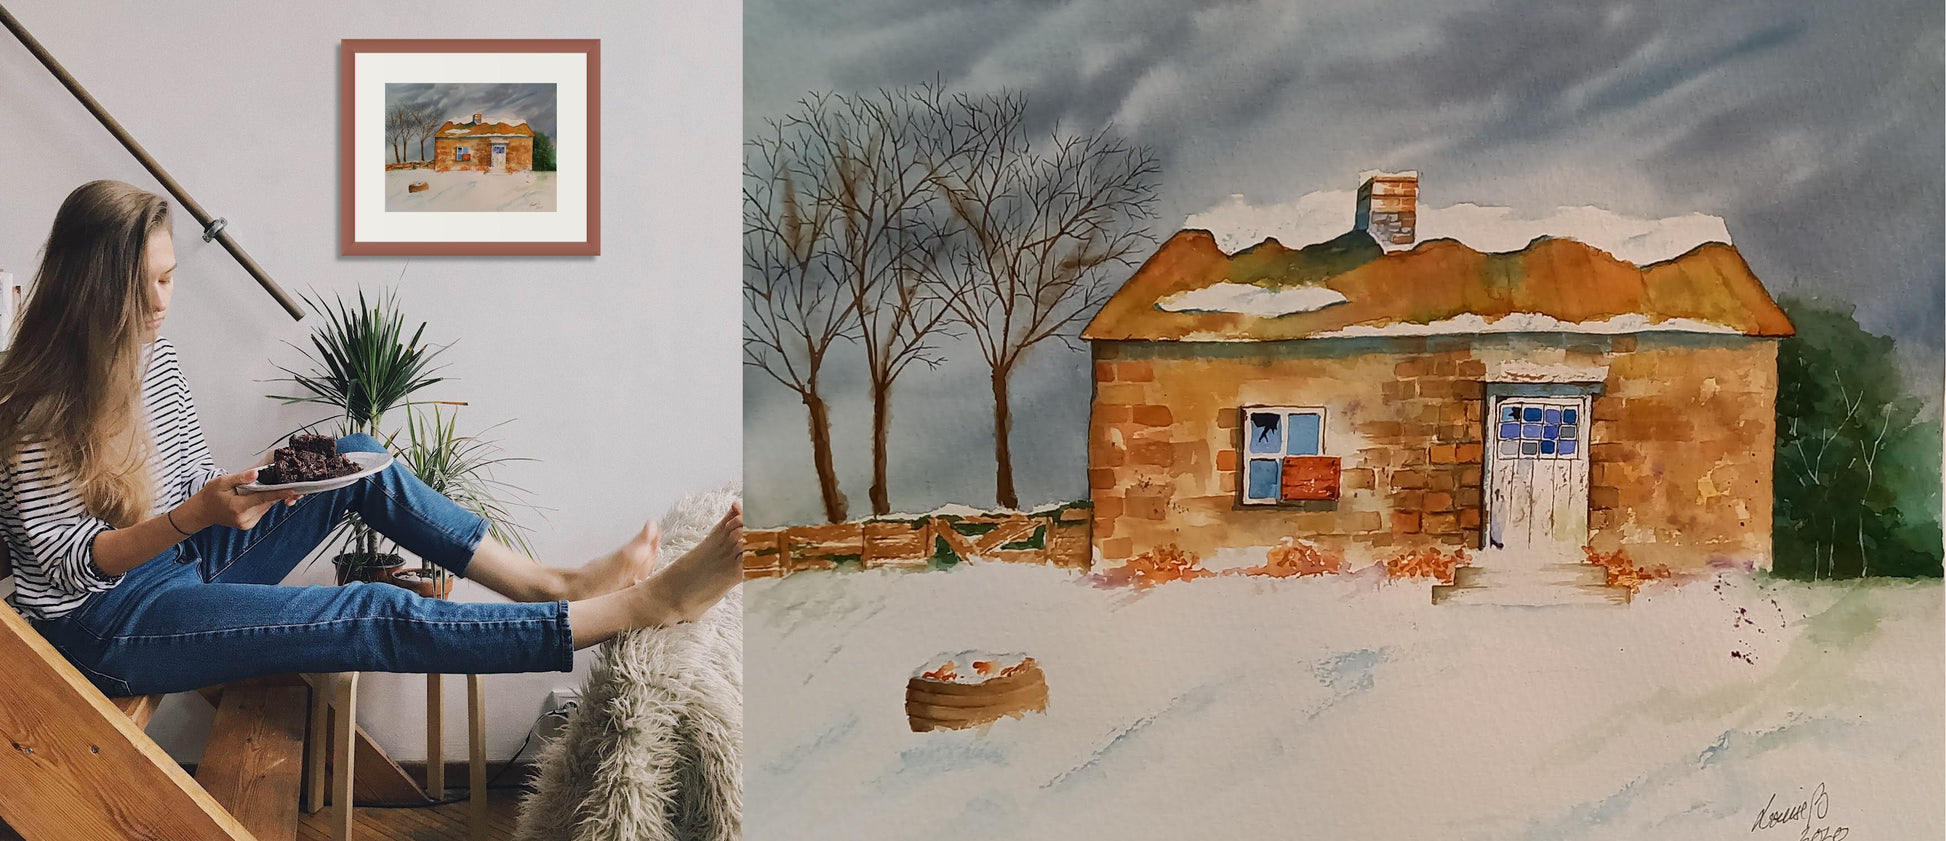 Hus på vintern - Paintings4you